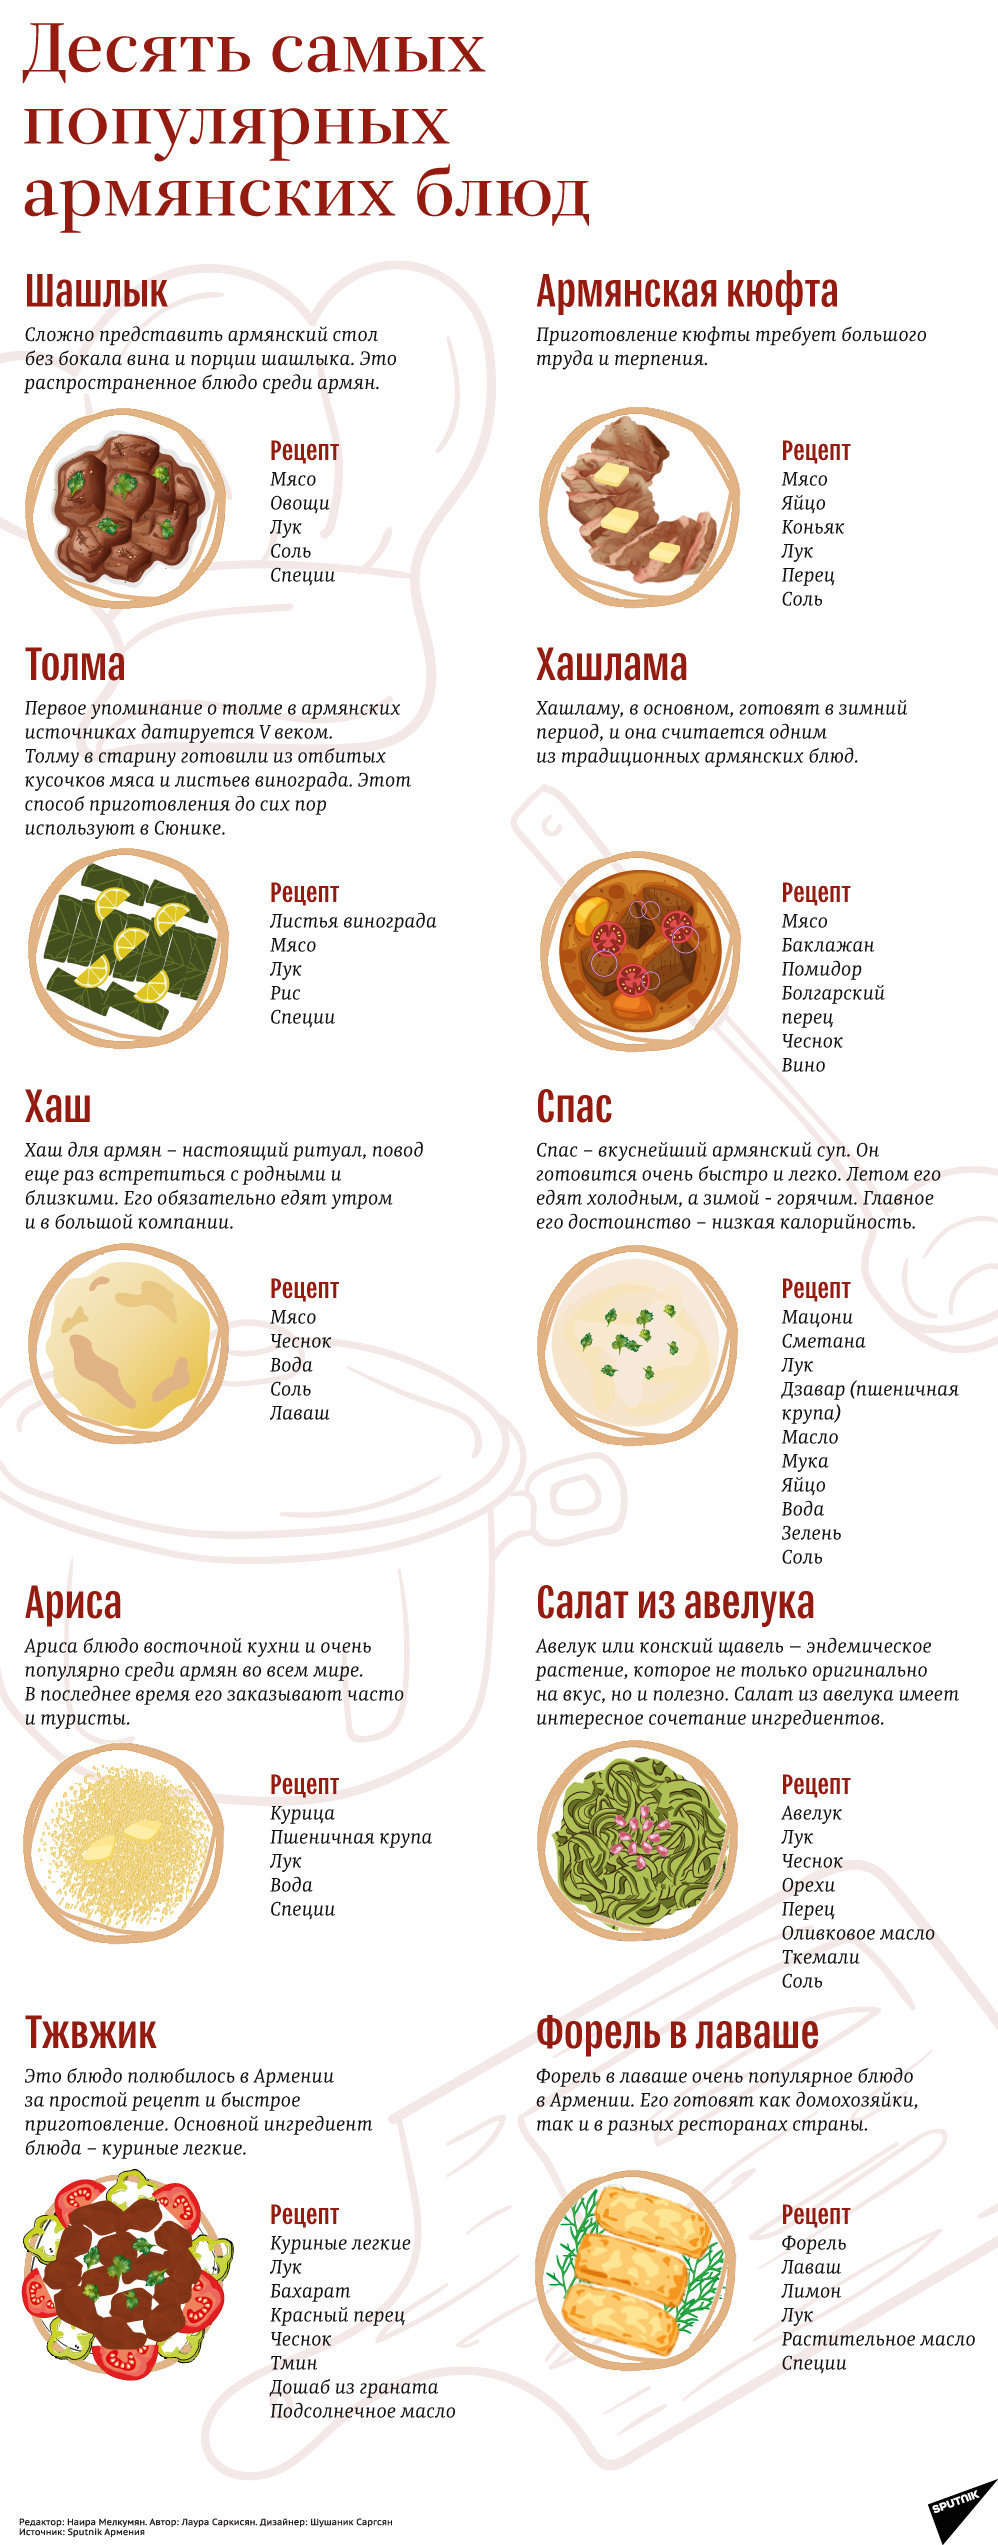 10 самых популярных армянских блюд - Sputnik Армения